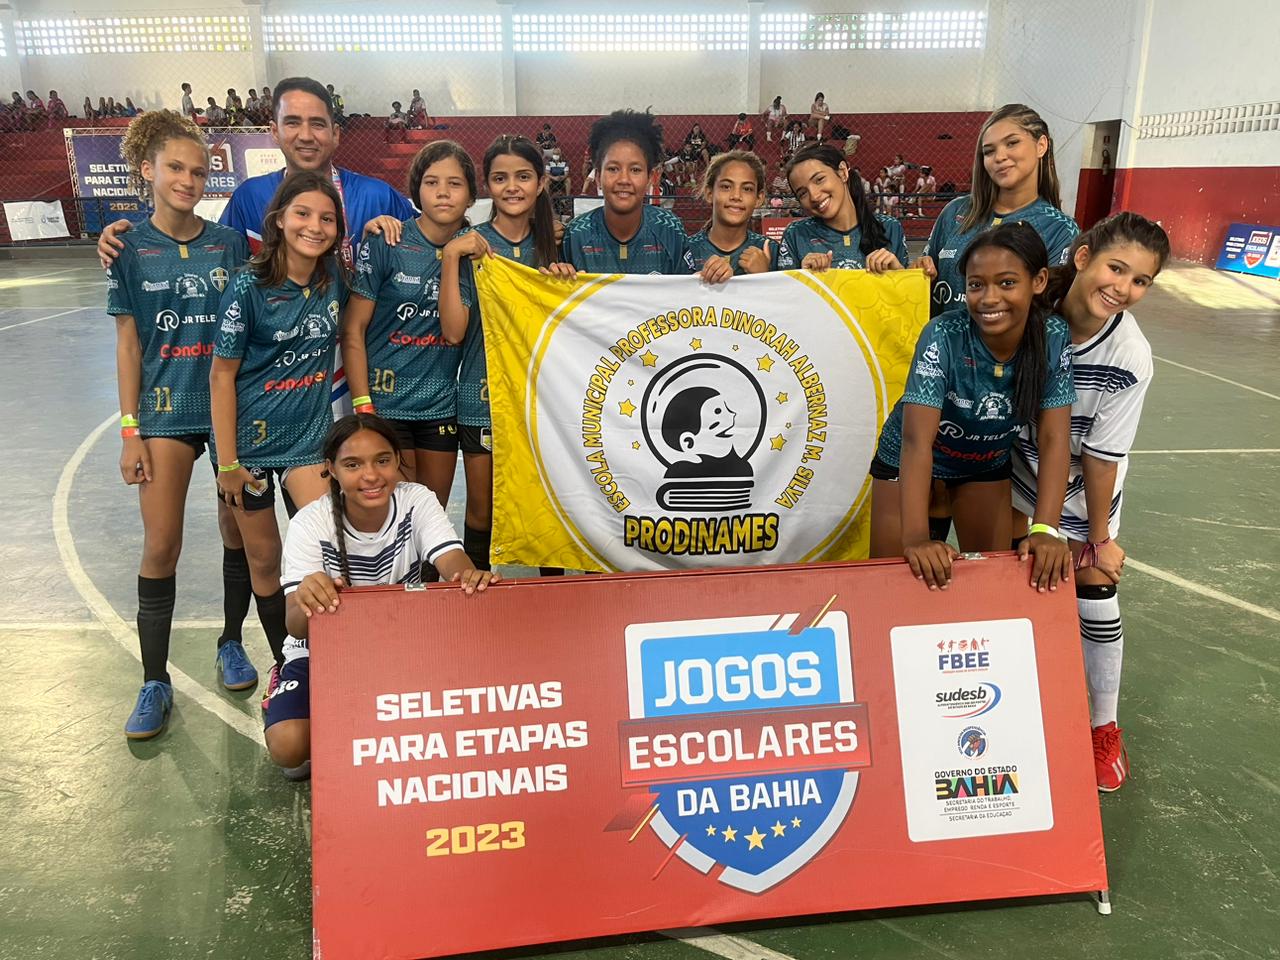 Jogos Escolares da Bahia: Estudantes de Juazeiro se classificam para etapa nacional